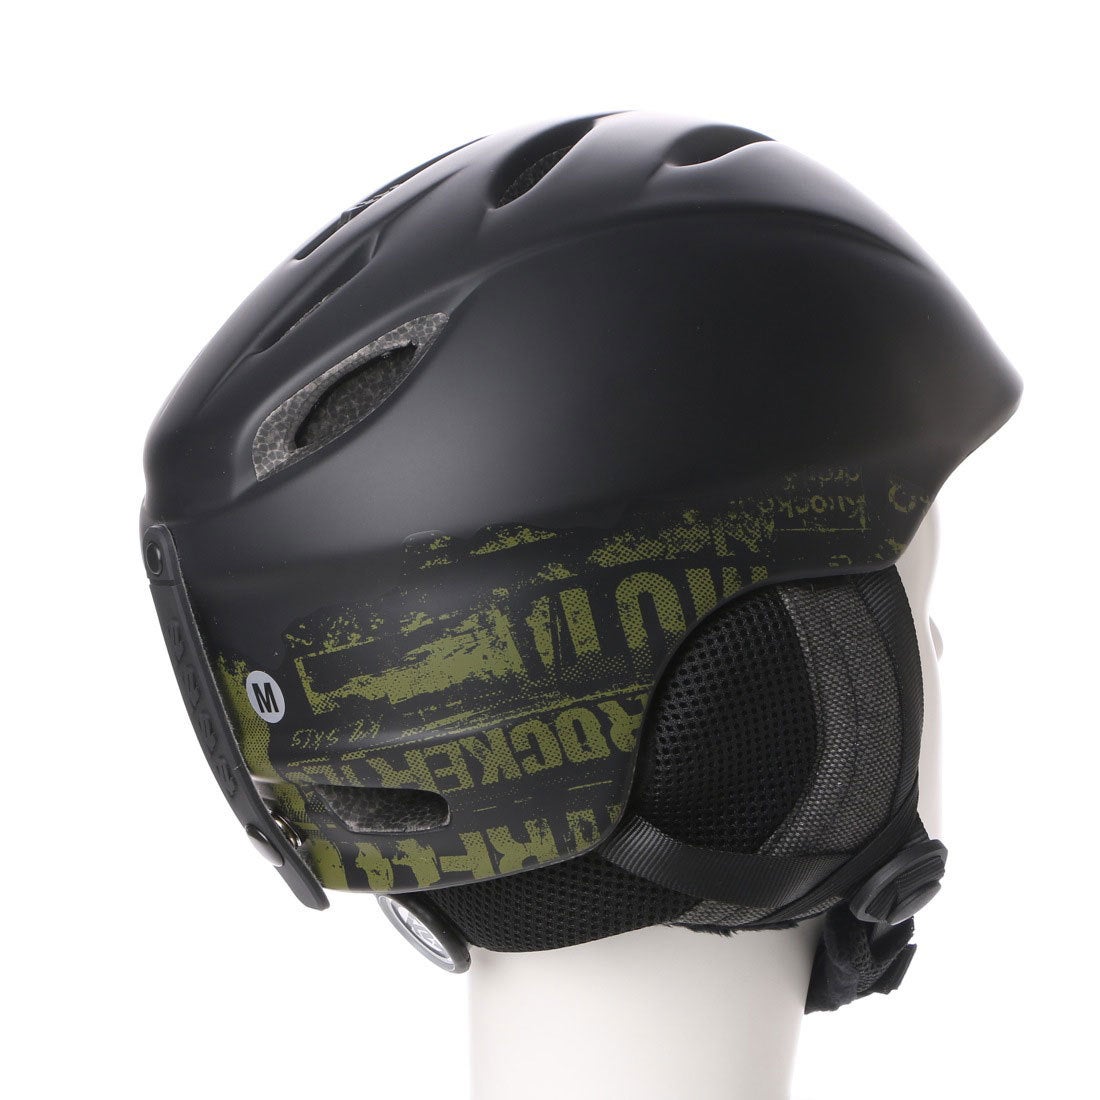 ケーツー K2 ユニセックス スキー/スノーボード ヘルメット フォトマジック S150801701 98